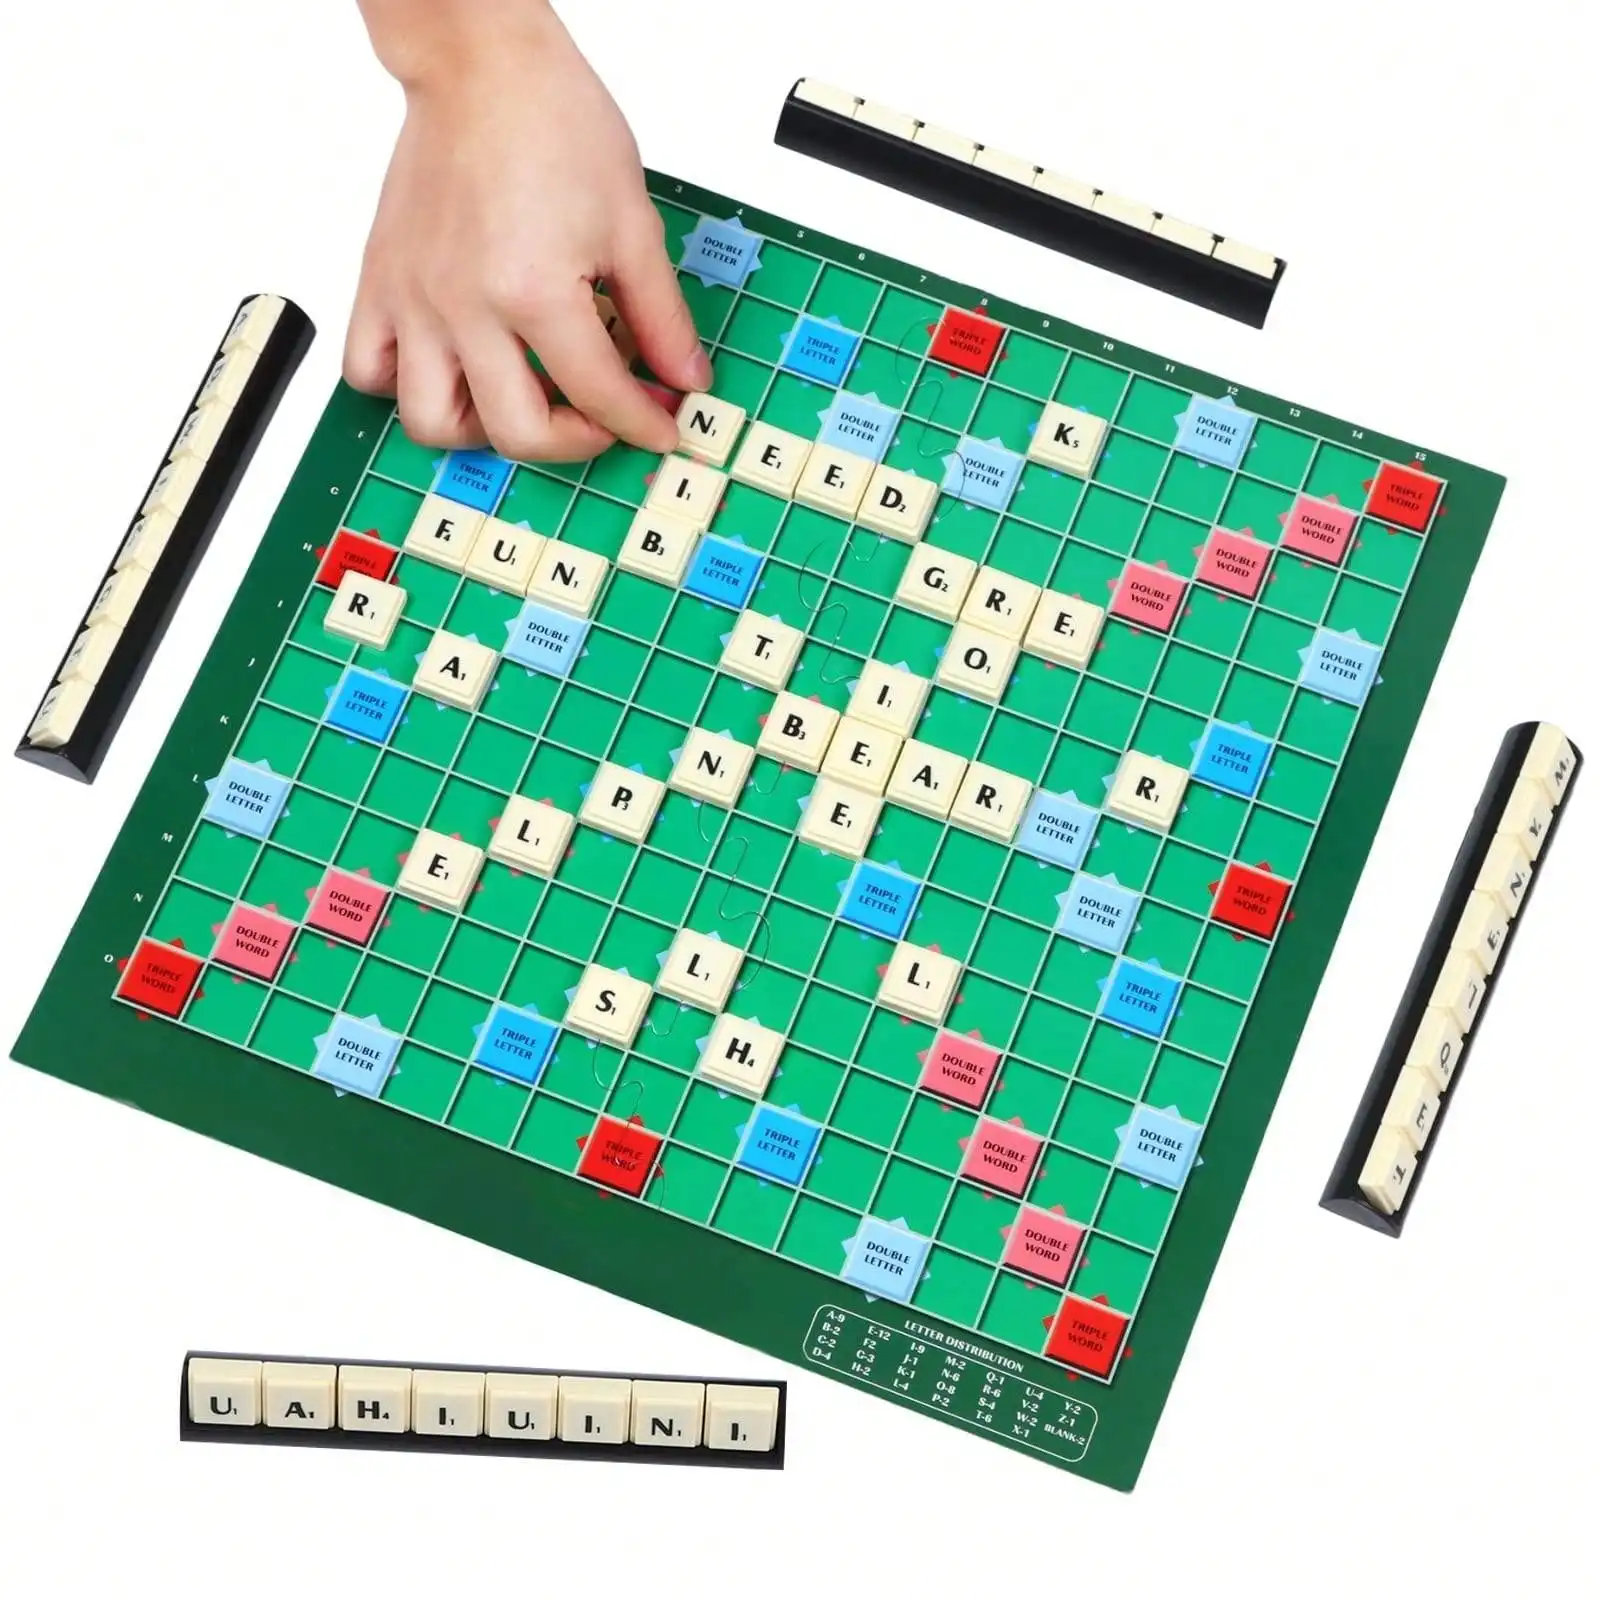 2〜4人用の英語のスクレーブルボードゲーム,ユニークなボードゲーム,アルファベット,チェス,ロシア語